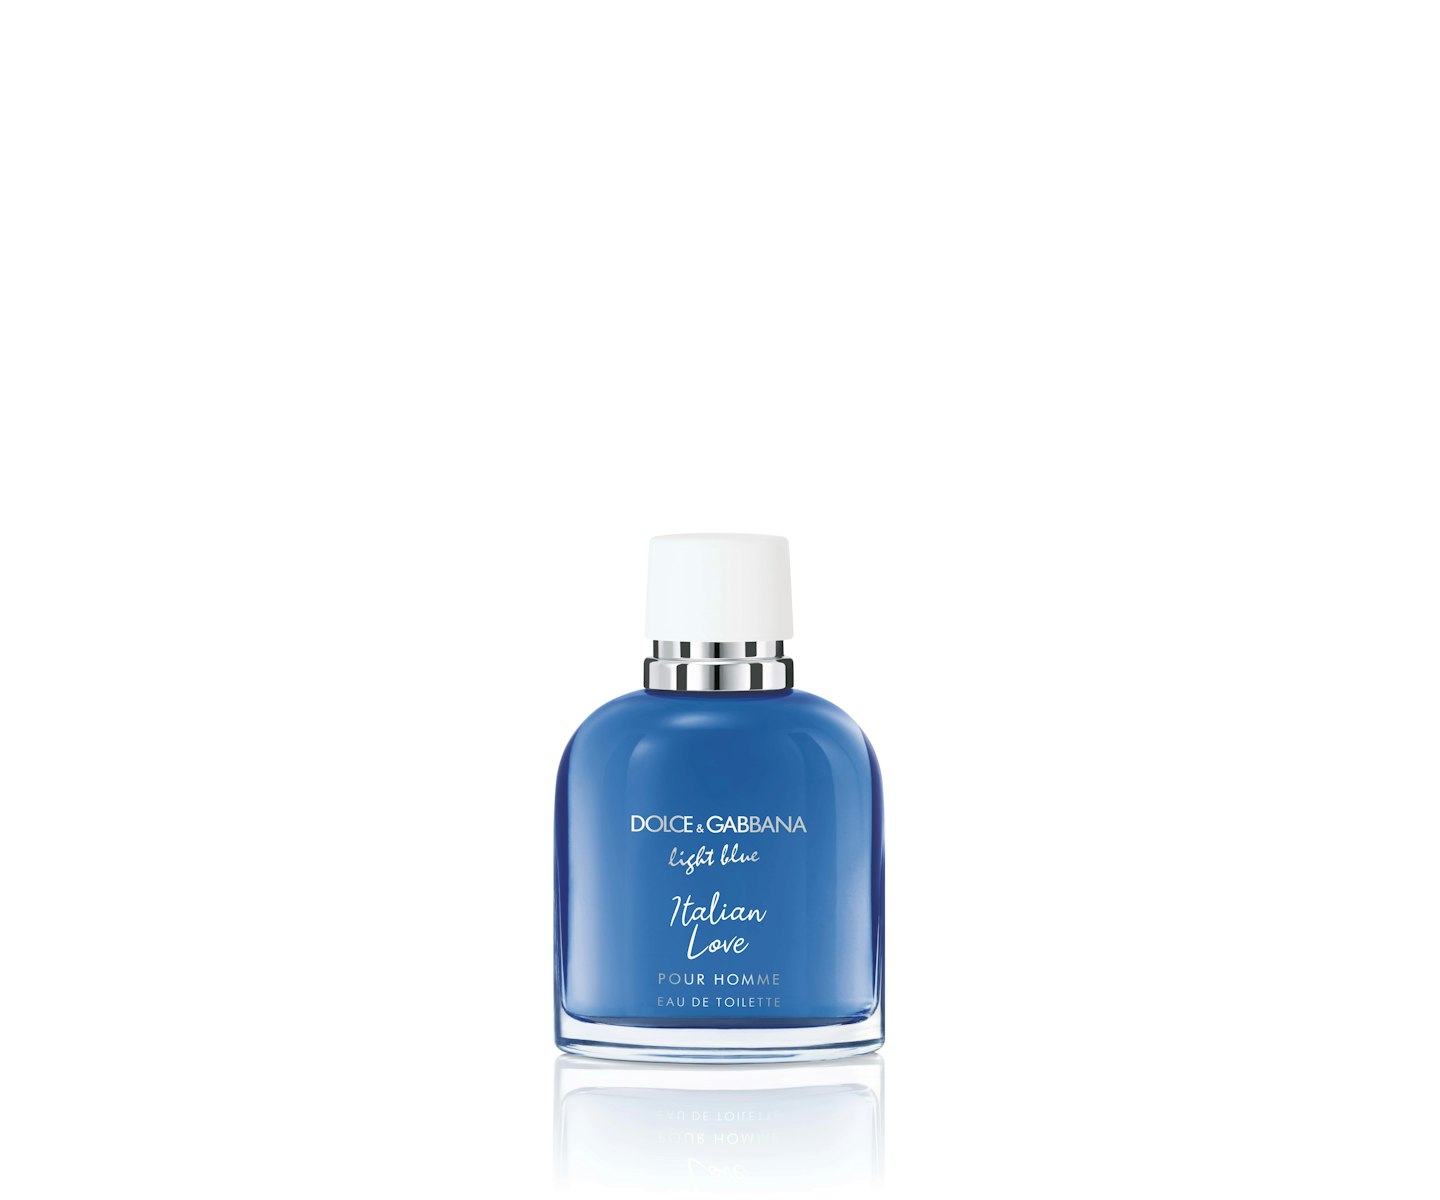 Dolce & Gabbana Light Blue Pour Homme Italian Love Eau de Toilette Spray